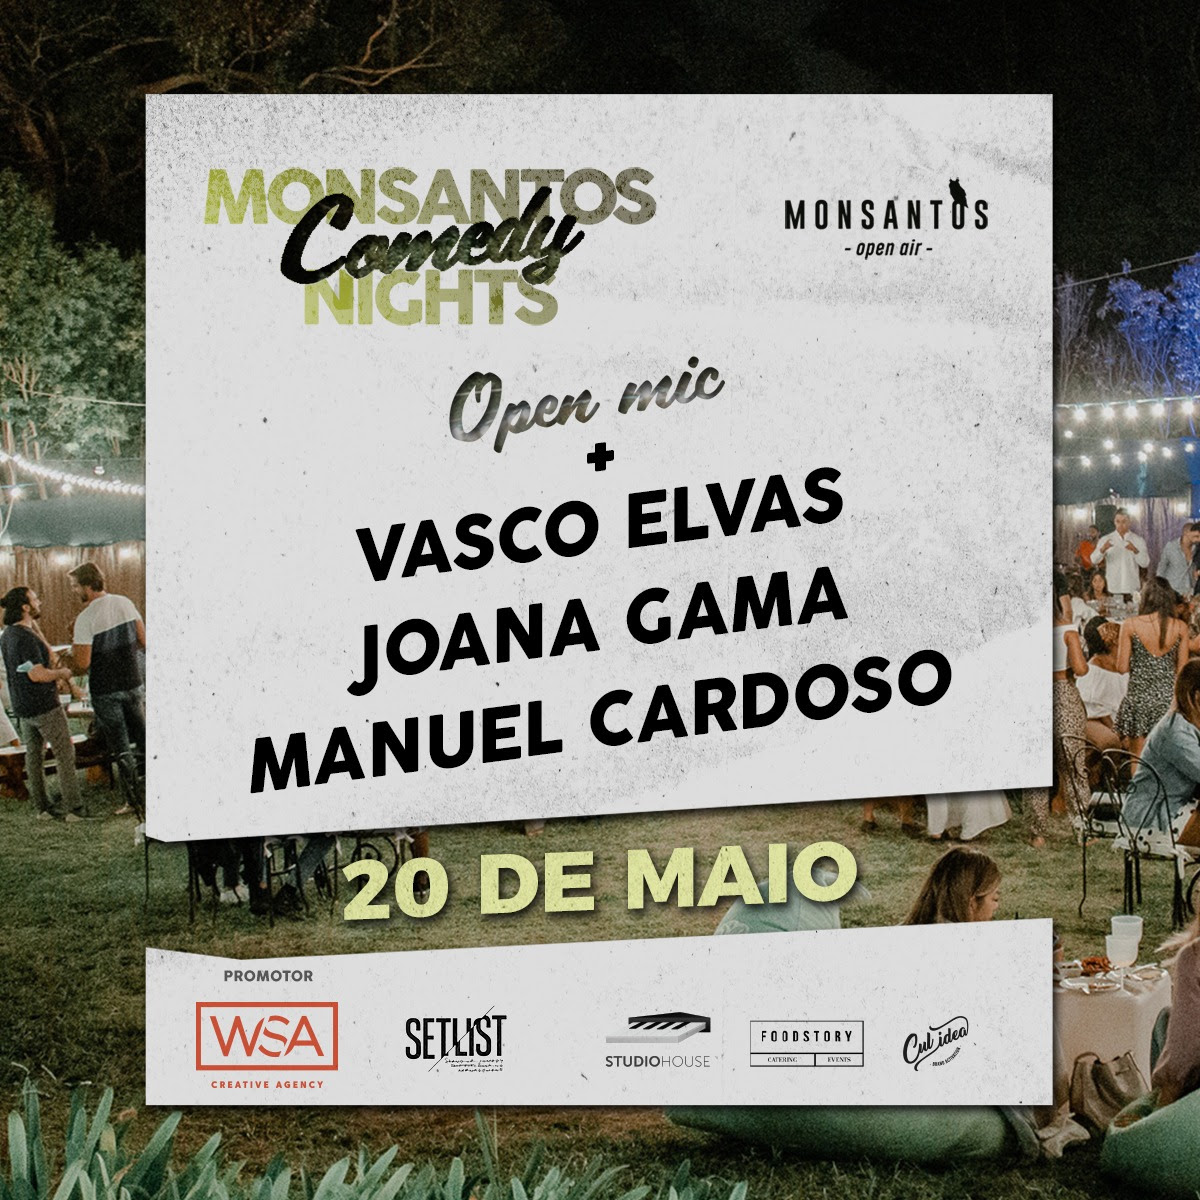 , Monsantos Comedy Nights começam amanhã com Manuel Cardoso, Joana Gama e Vasco Elvas